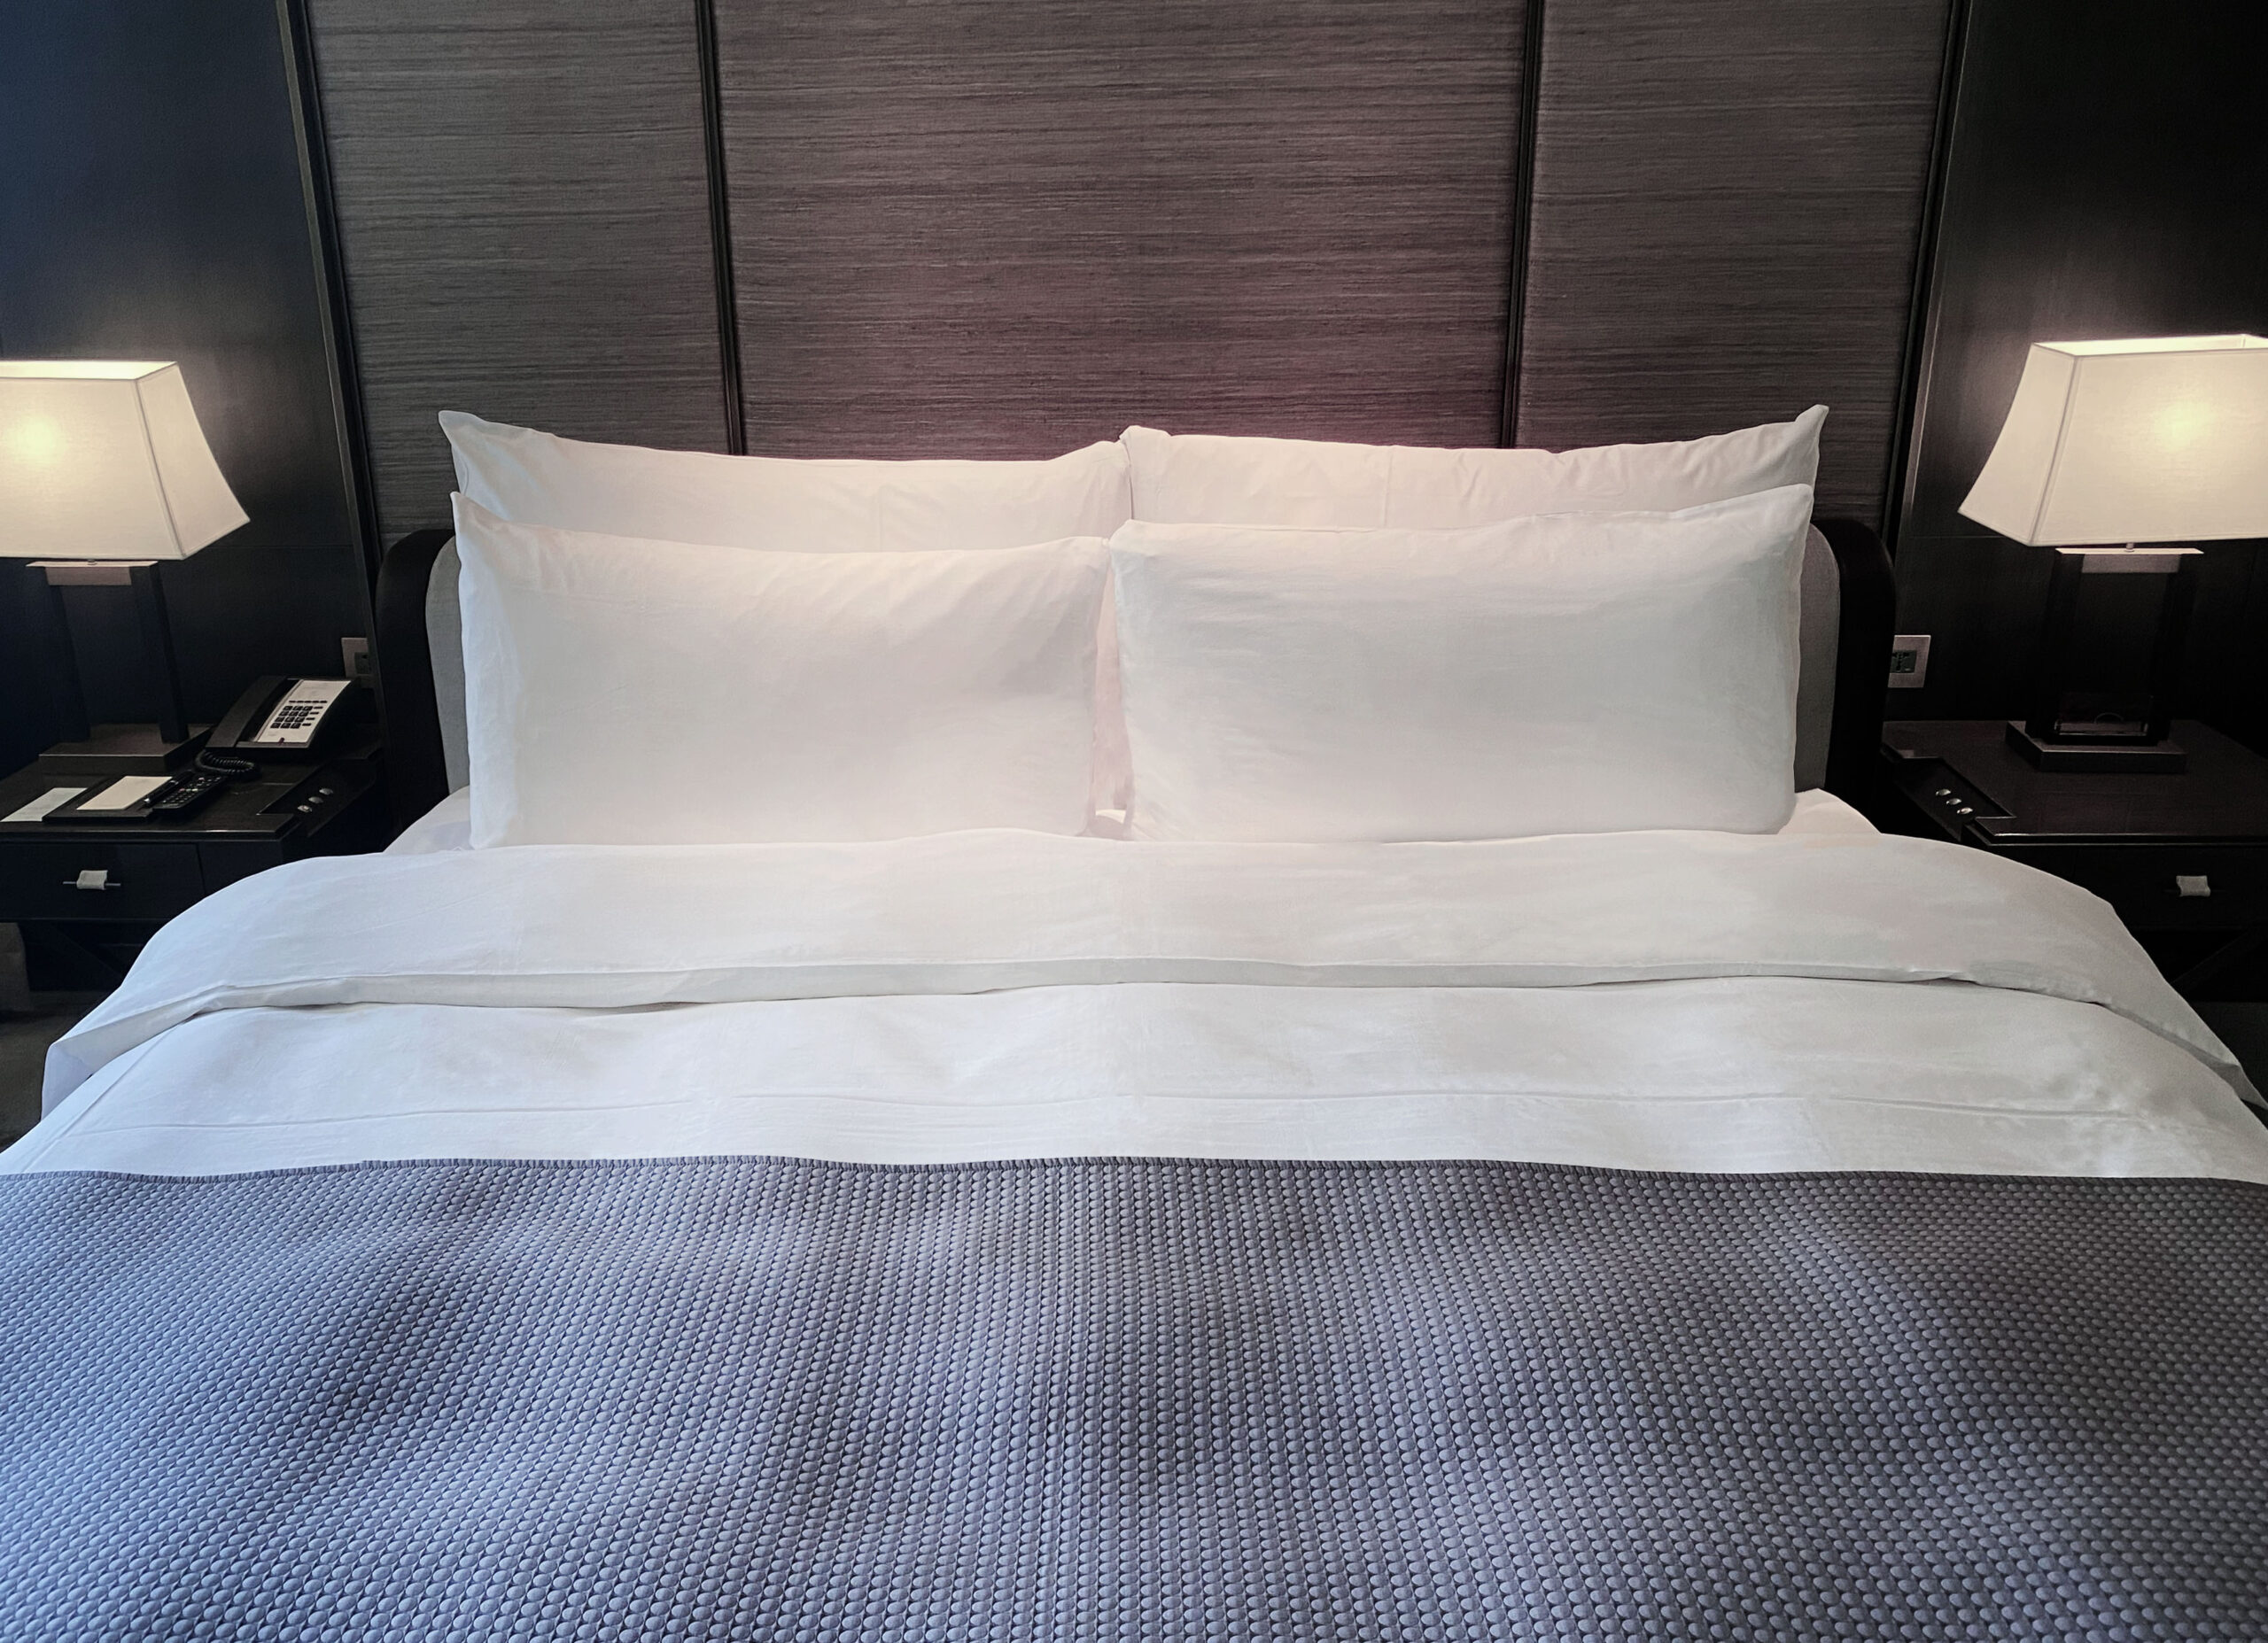 枕頭,頸枕,枕頭套,大枕頭,合意枕頭,慕軒枕頭 高級飯店枕頭,高級枕頭,高品質枕頭